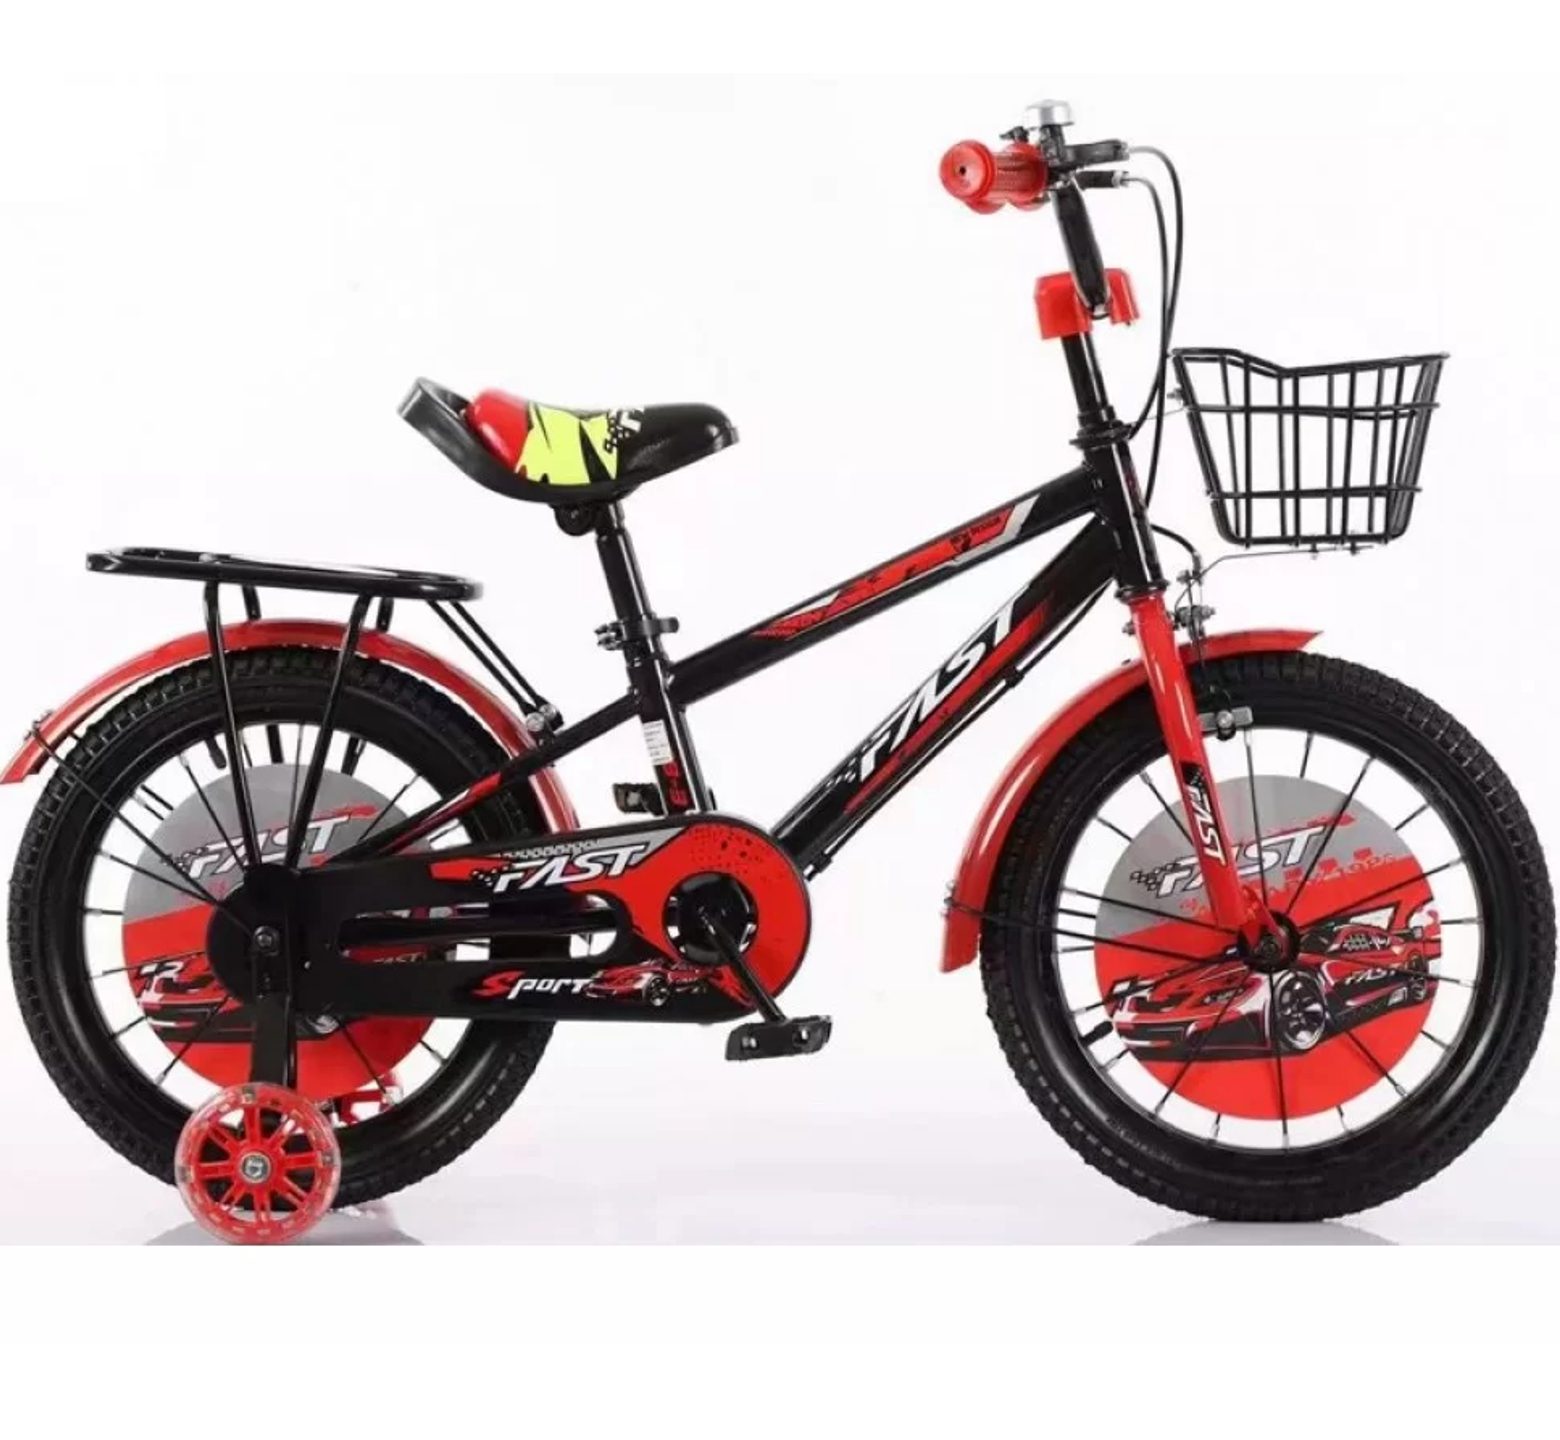 Ποδήλατο Fast Sport 12 - 16 ιντσών με καλάθι και σχάρα σε μαύρο κόκκινο χρώμα